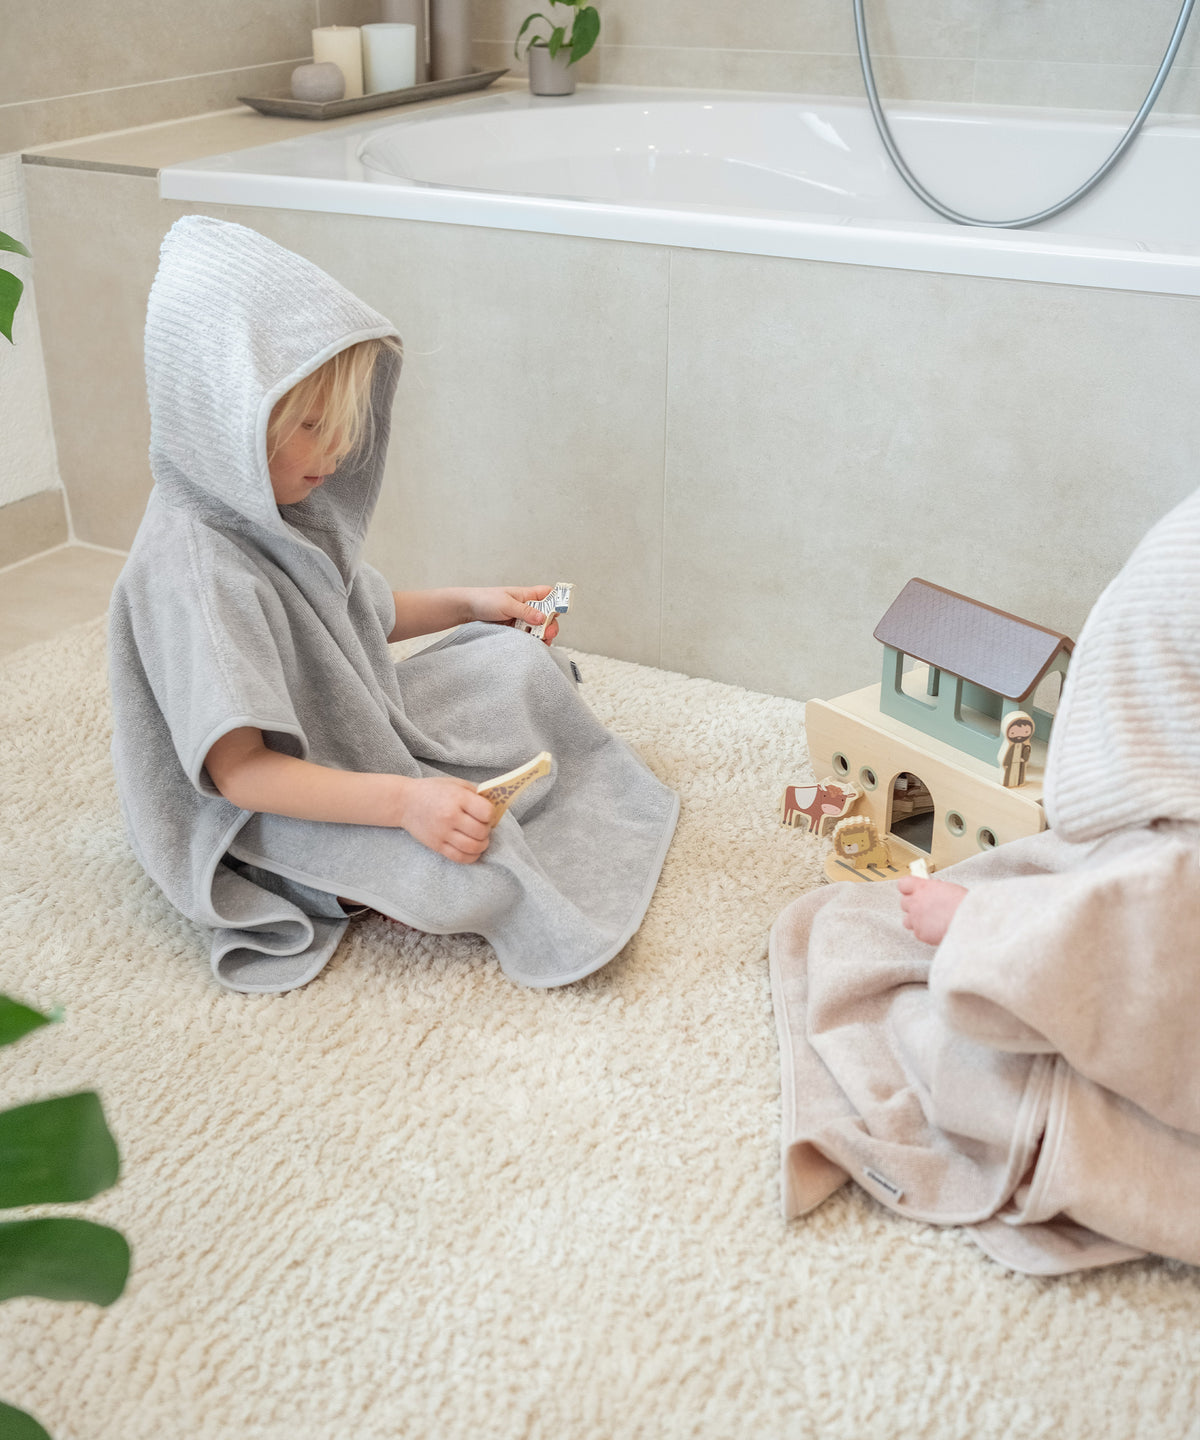 Kind in Badeponcho Hellgrau spielt auf Badezimmer-Teppich.